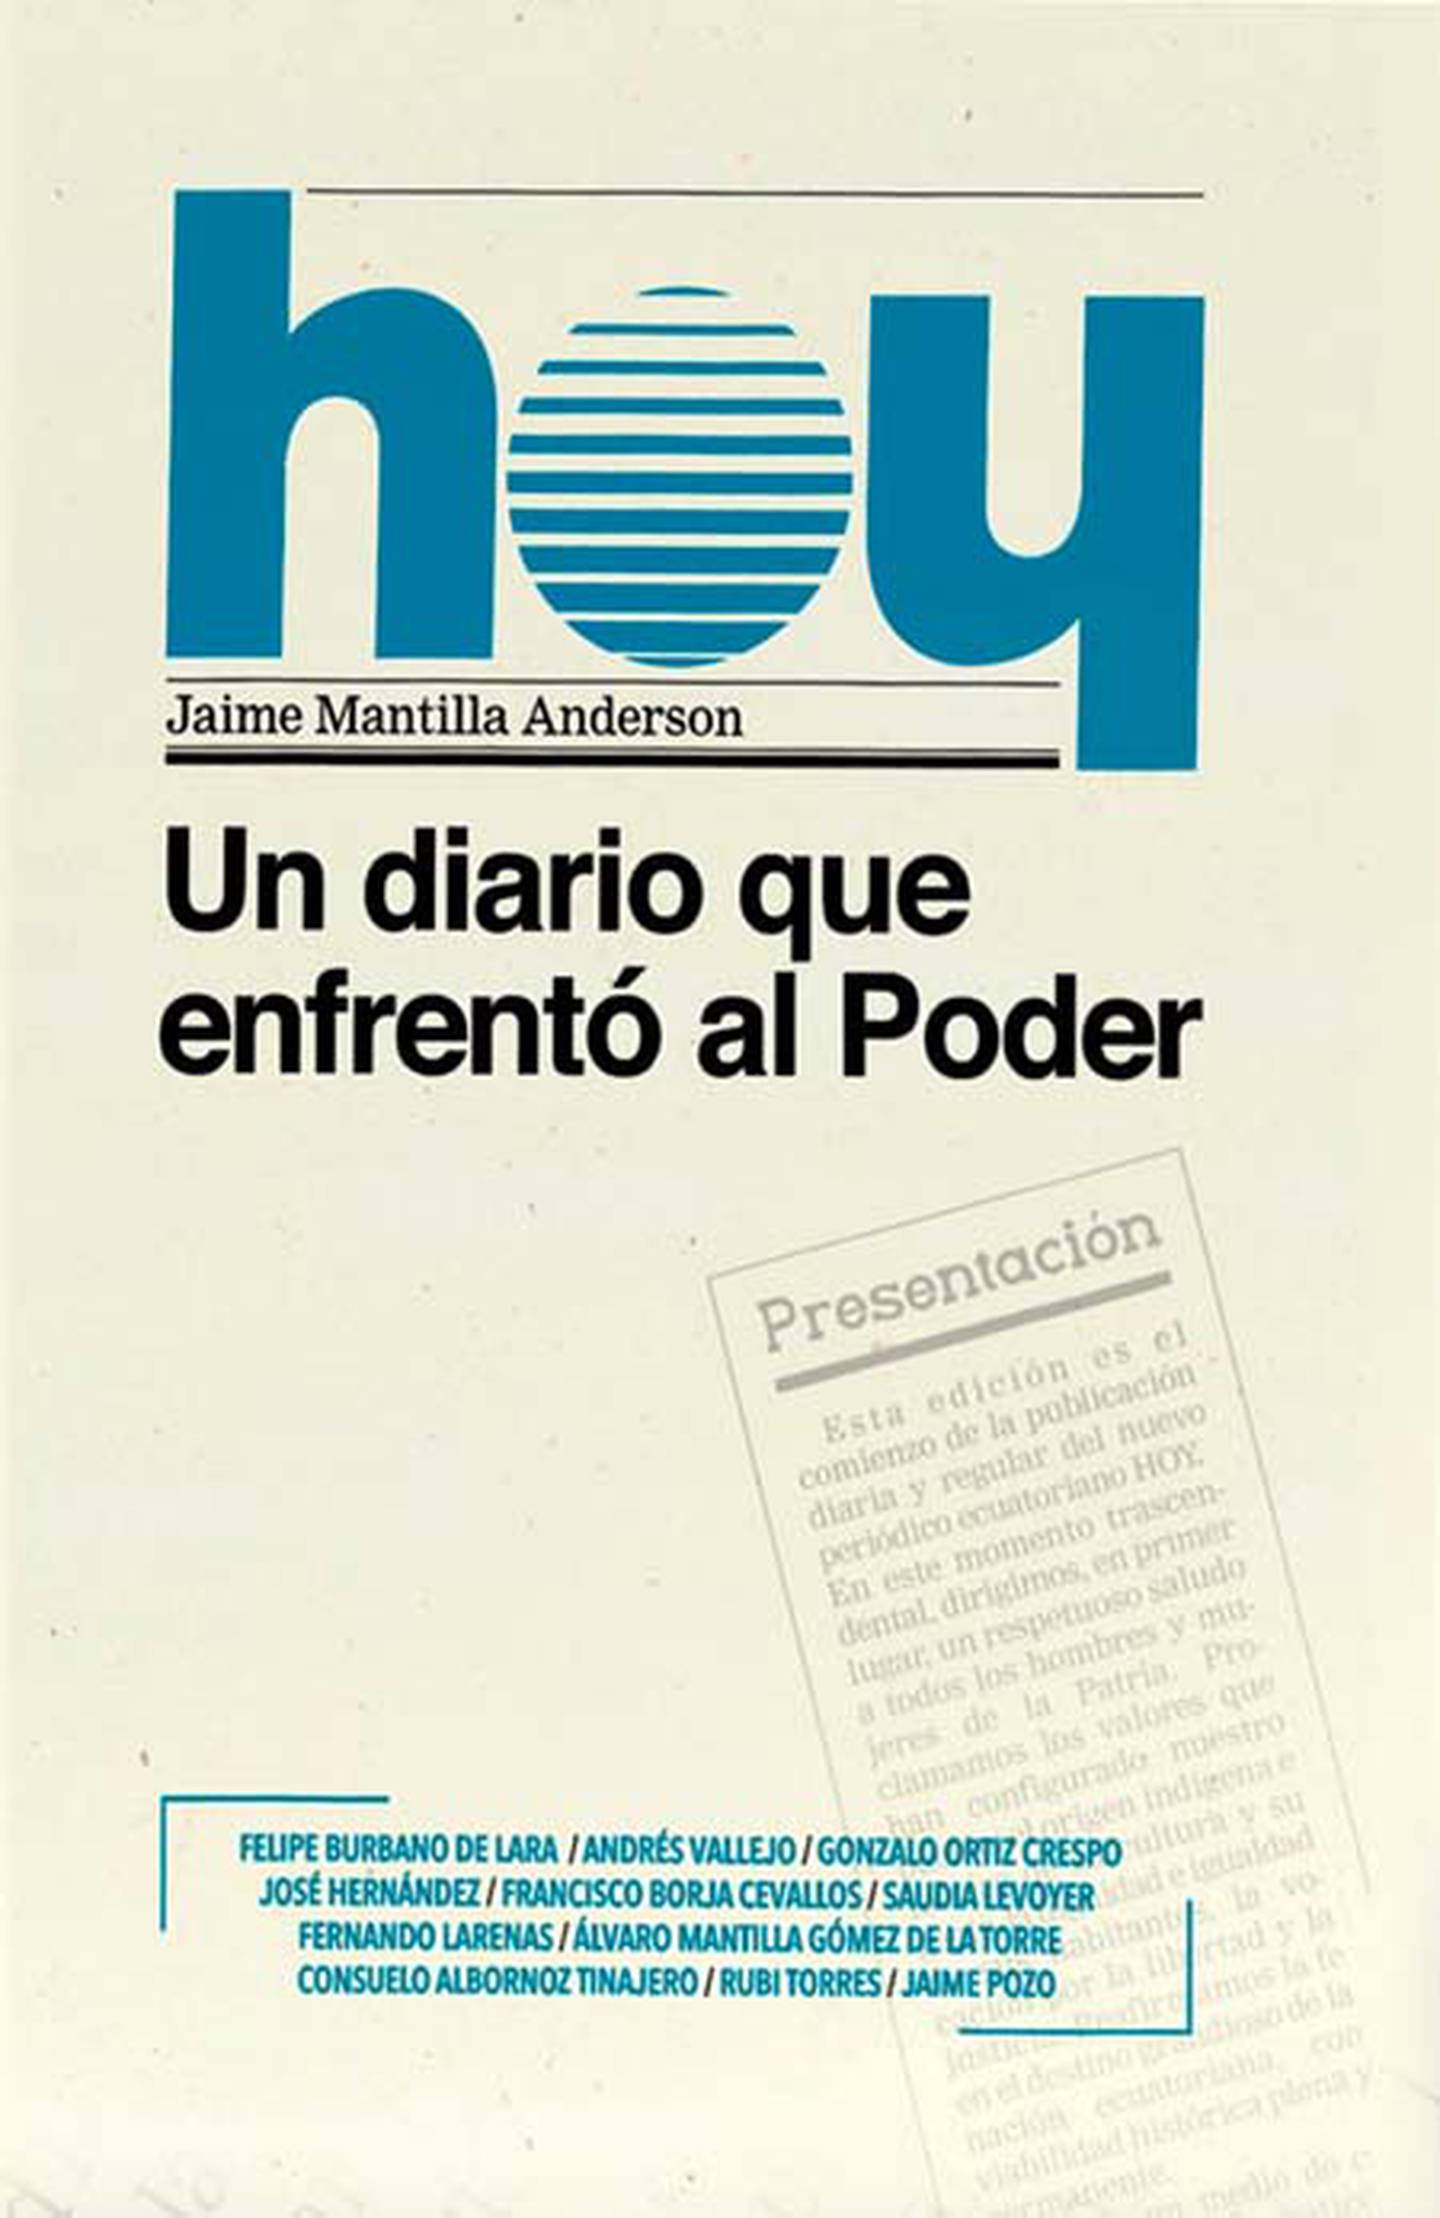 ‘HOY, un diario que enfrentó al poder’ se vende en Mr. Books, Librimundo, Librería Española , The Owl e la U. San Francisco